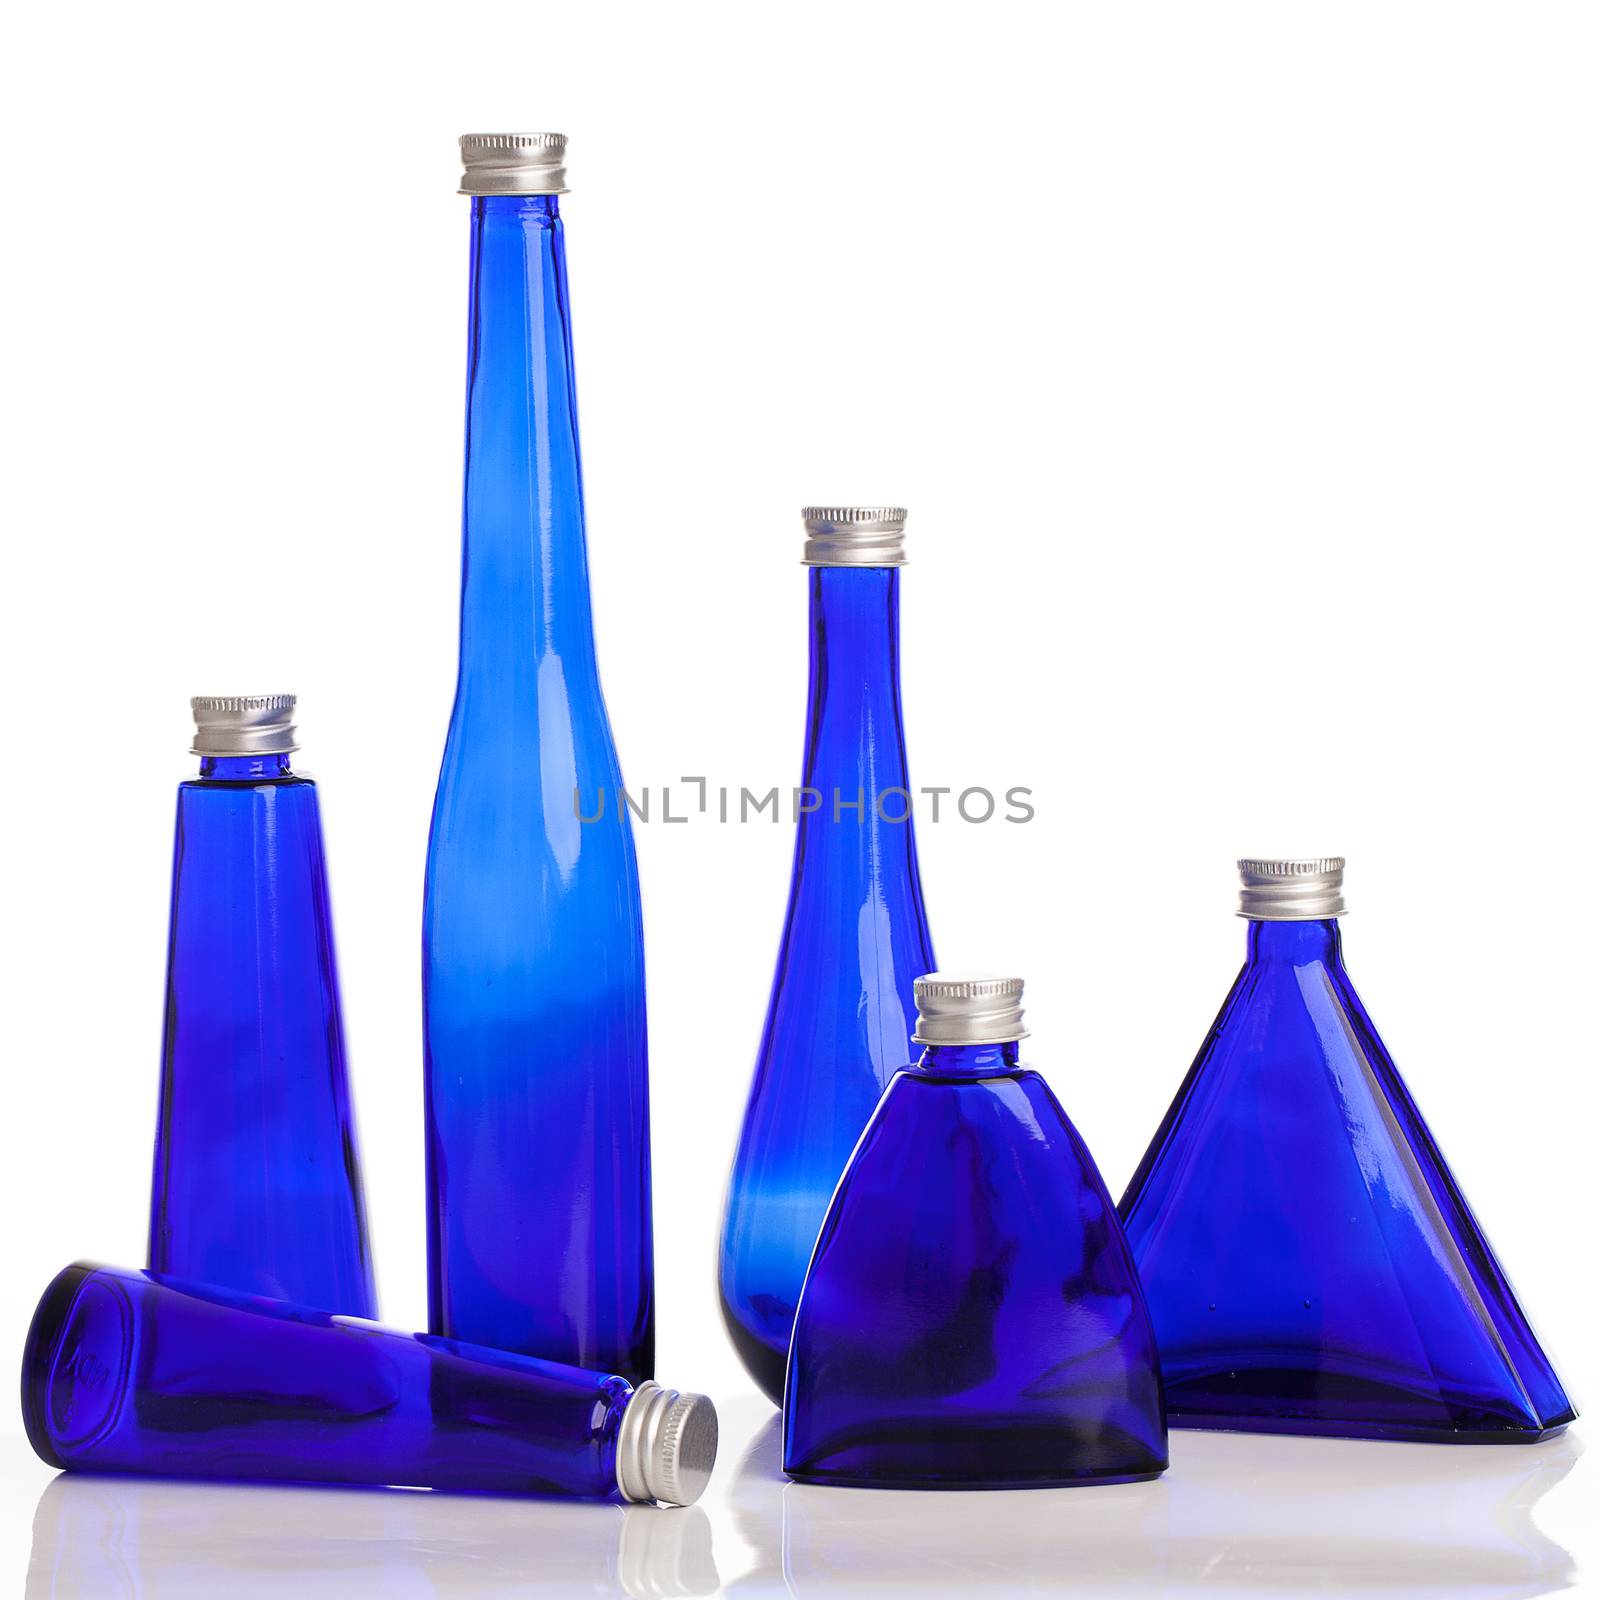 Little blue bottles isolated over white background